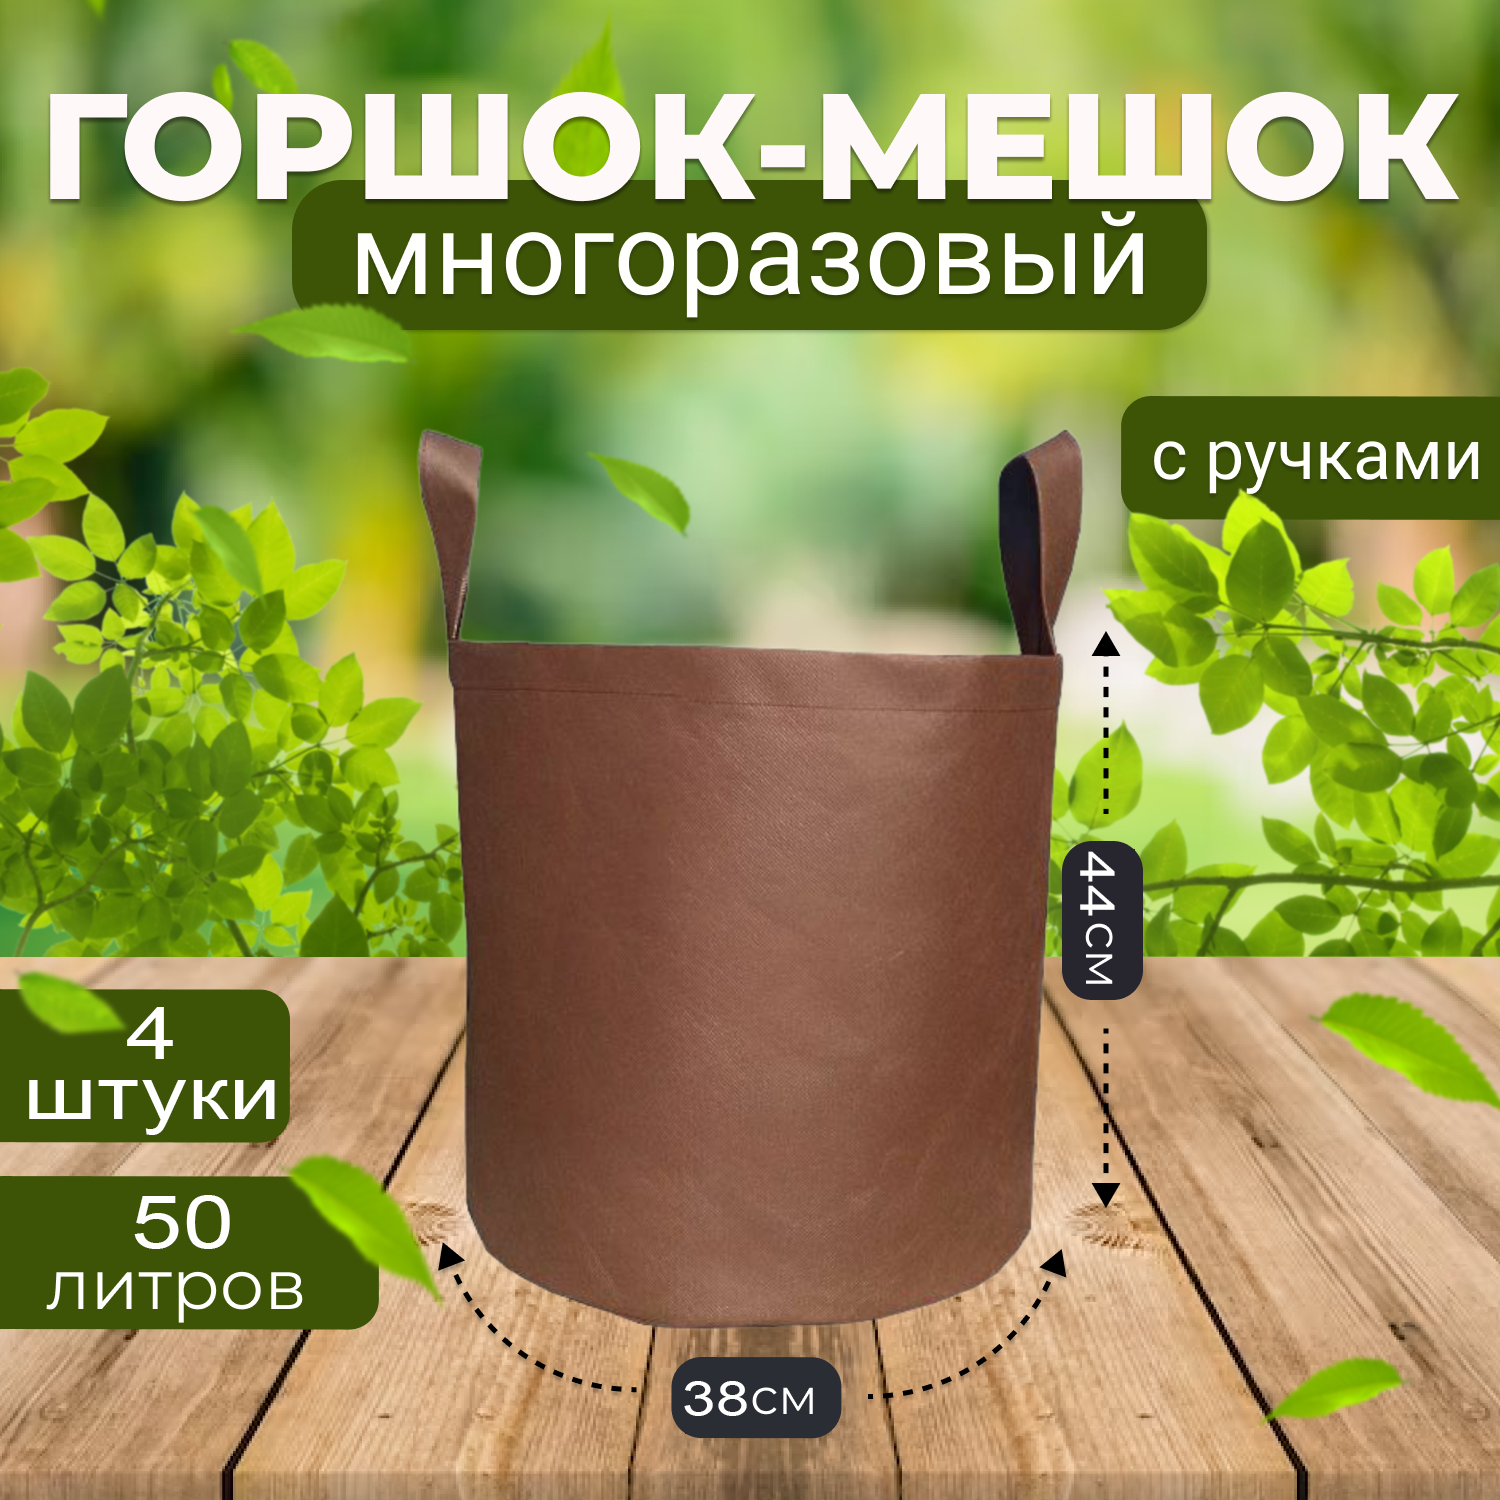 Мешок горшок текстильный из спанбонда Grower Green 50_litrov-Brown_4 50л., 4шт.